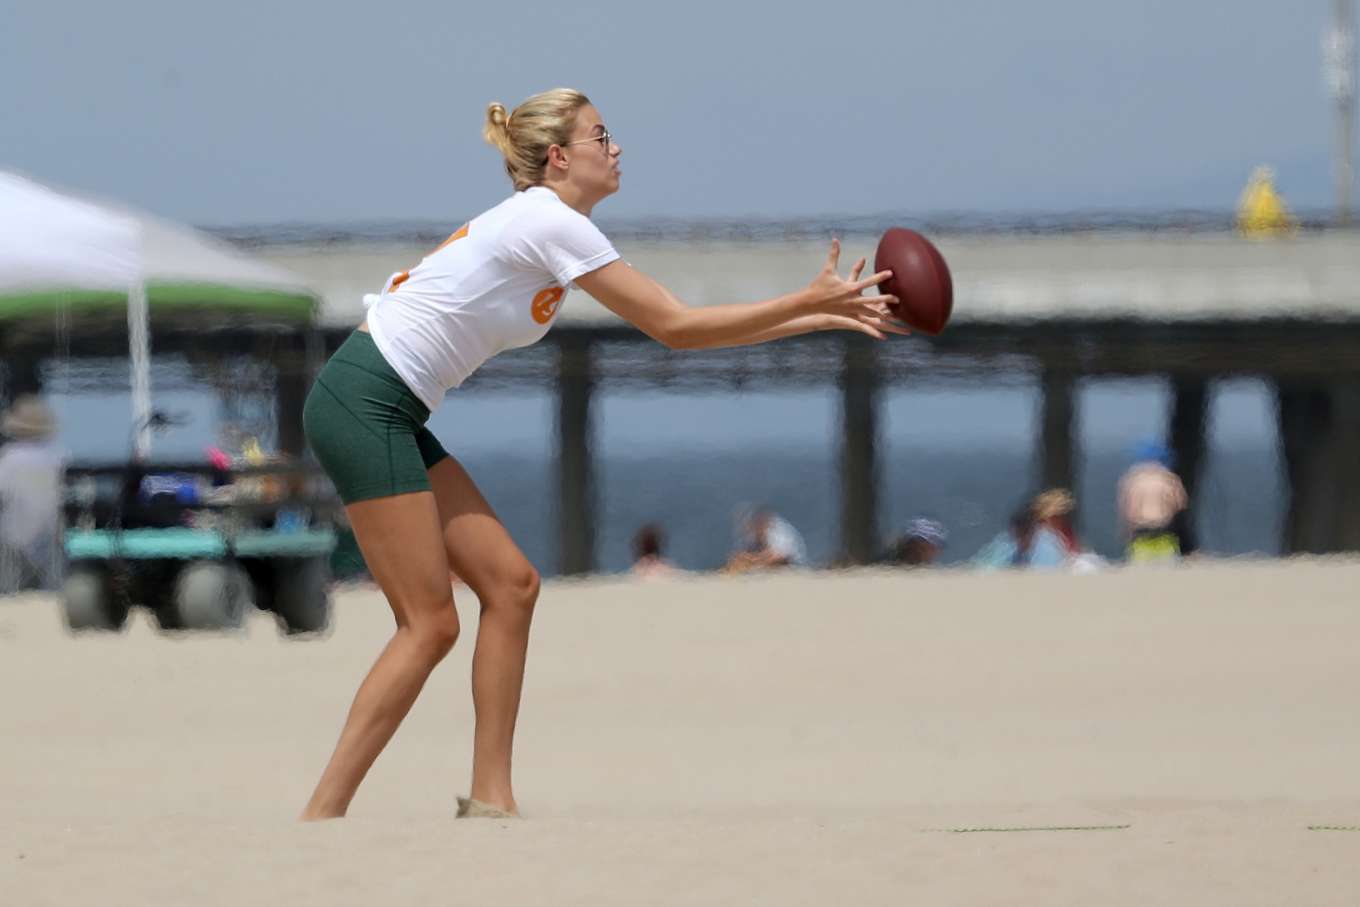 Hailey Clauson â€“ Playing flag football on Venice Beach